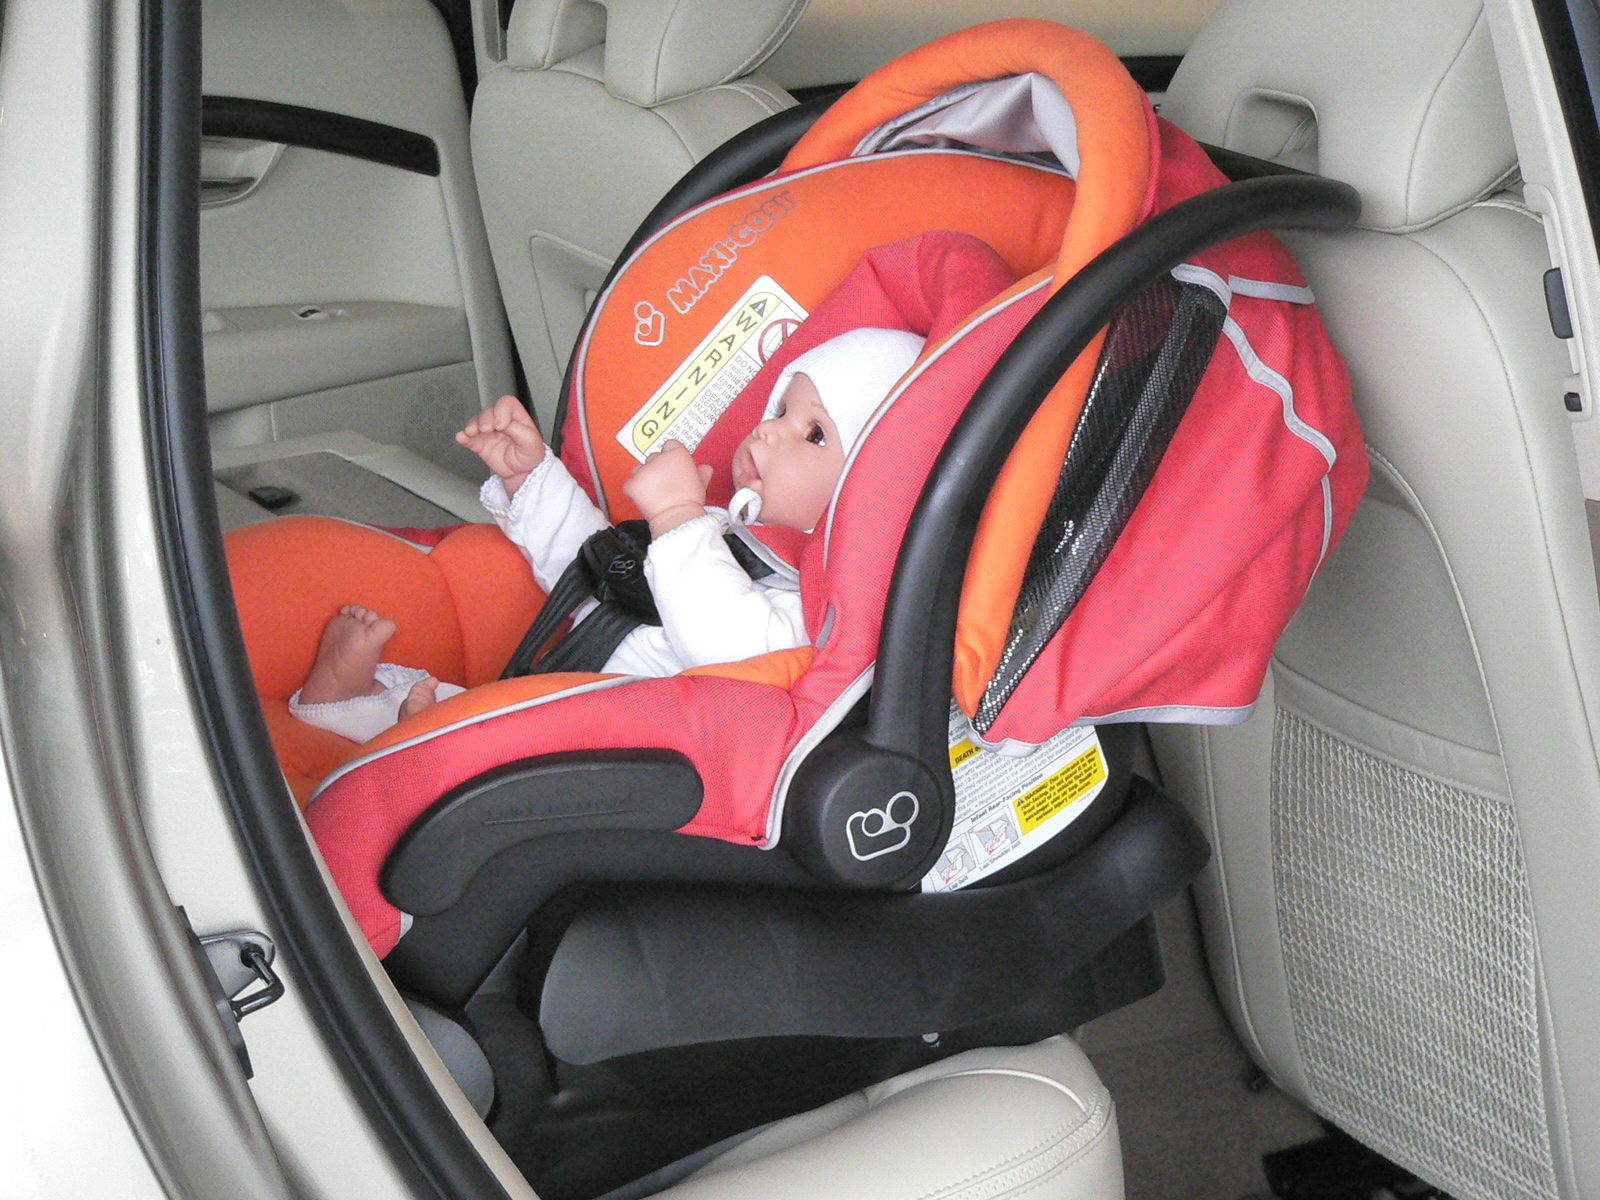 Люлька на переднем сиденье. Автолюлька MEGALINE. Автолюлька для новорожденных в машине. Автокресло для новорожденных. Крепление люльки в автомобиле.